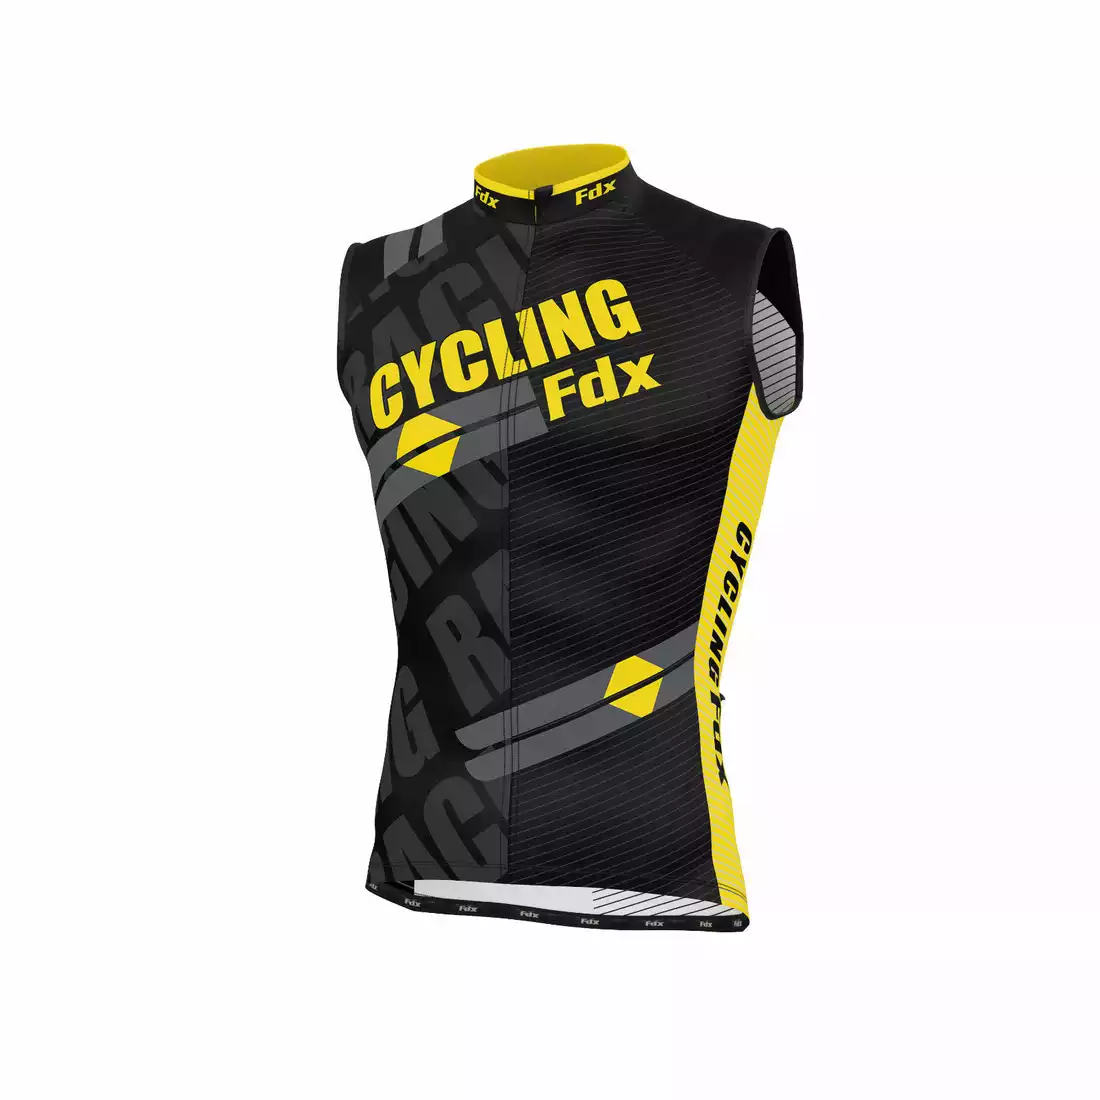 FDX 1050 męska koszulka rowerowa bez rękawków czarno-żółta